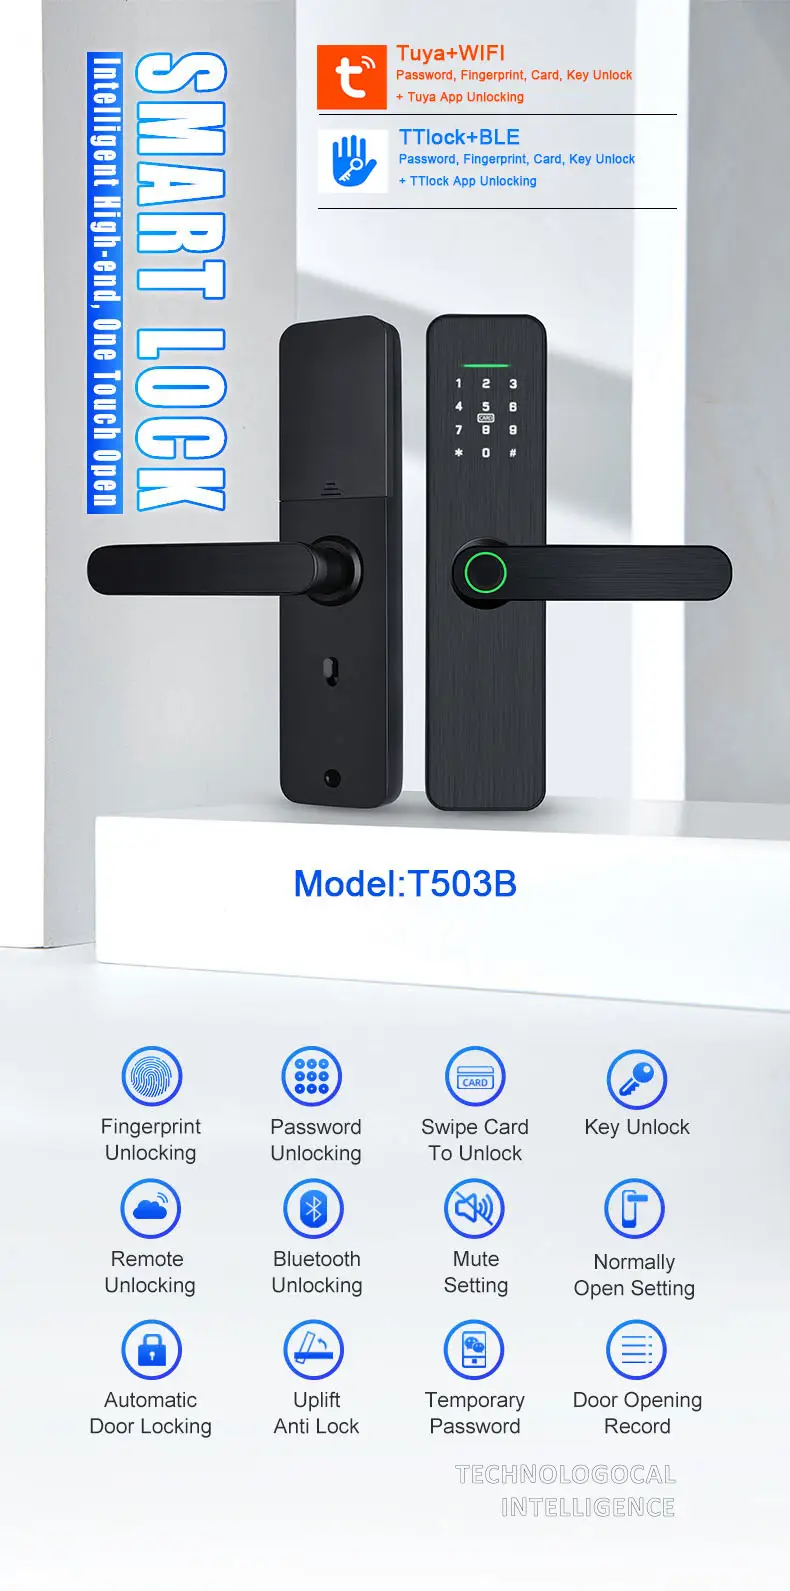 फ़िंगरप्रिंट बिना चाबी चोरी-रोधी अलार्म टच आईडी डिजिटल पैनल स्मार्टलॉक रूम दरवाज़े का हैंडल चाबी लॉक के साथ